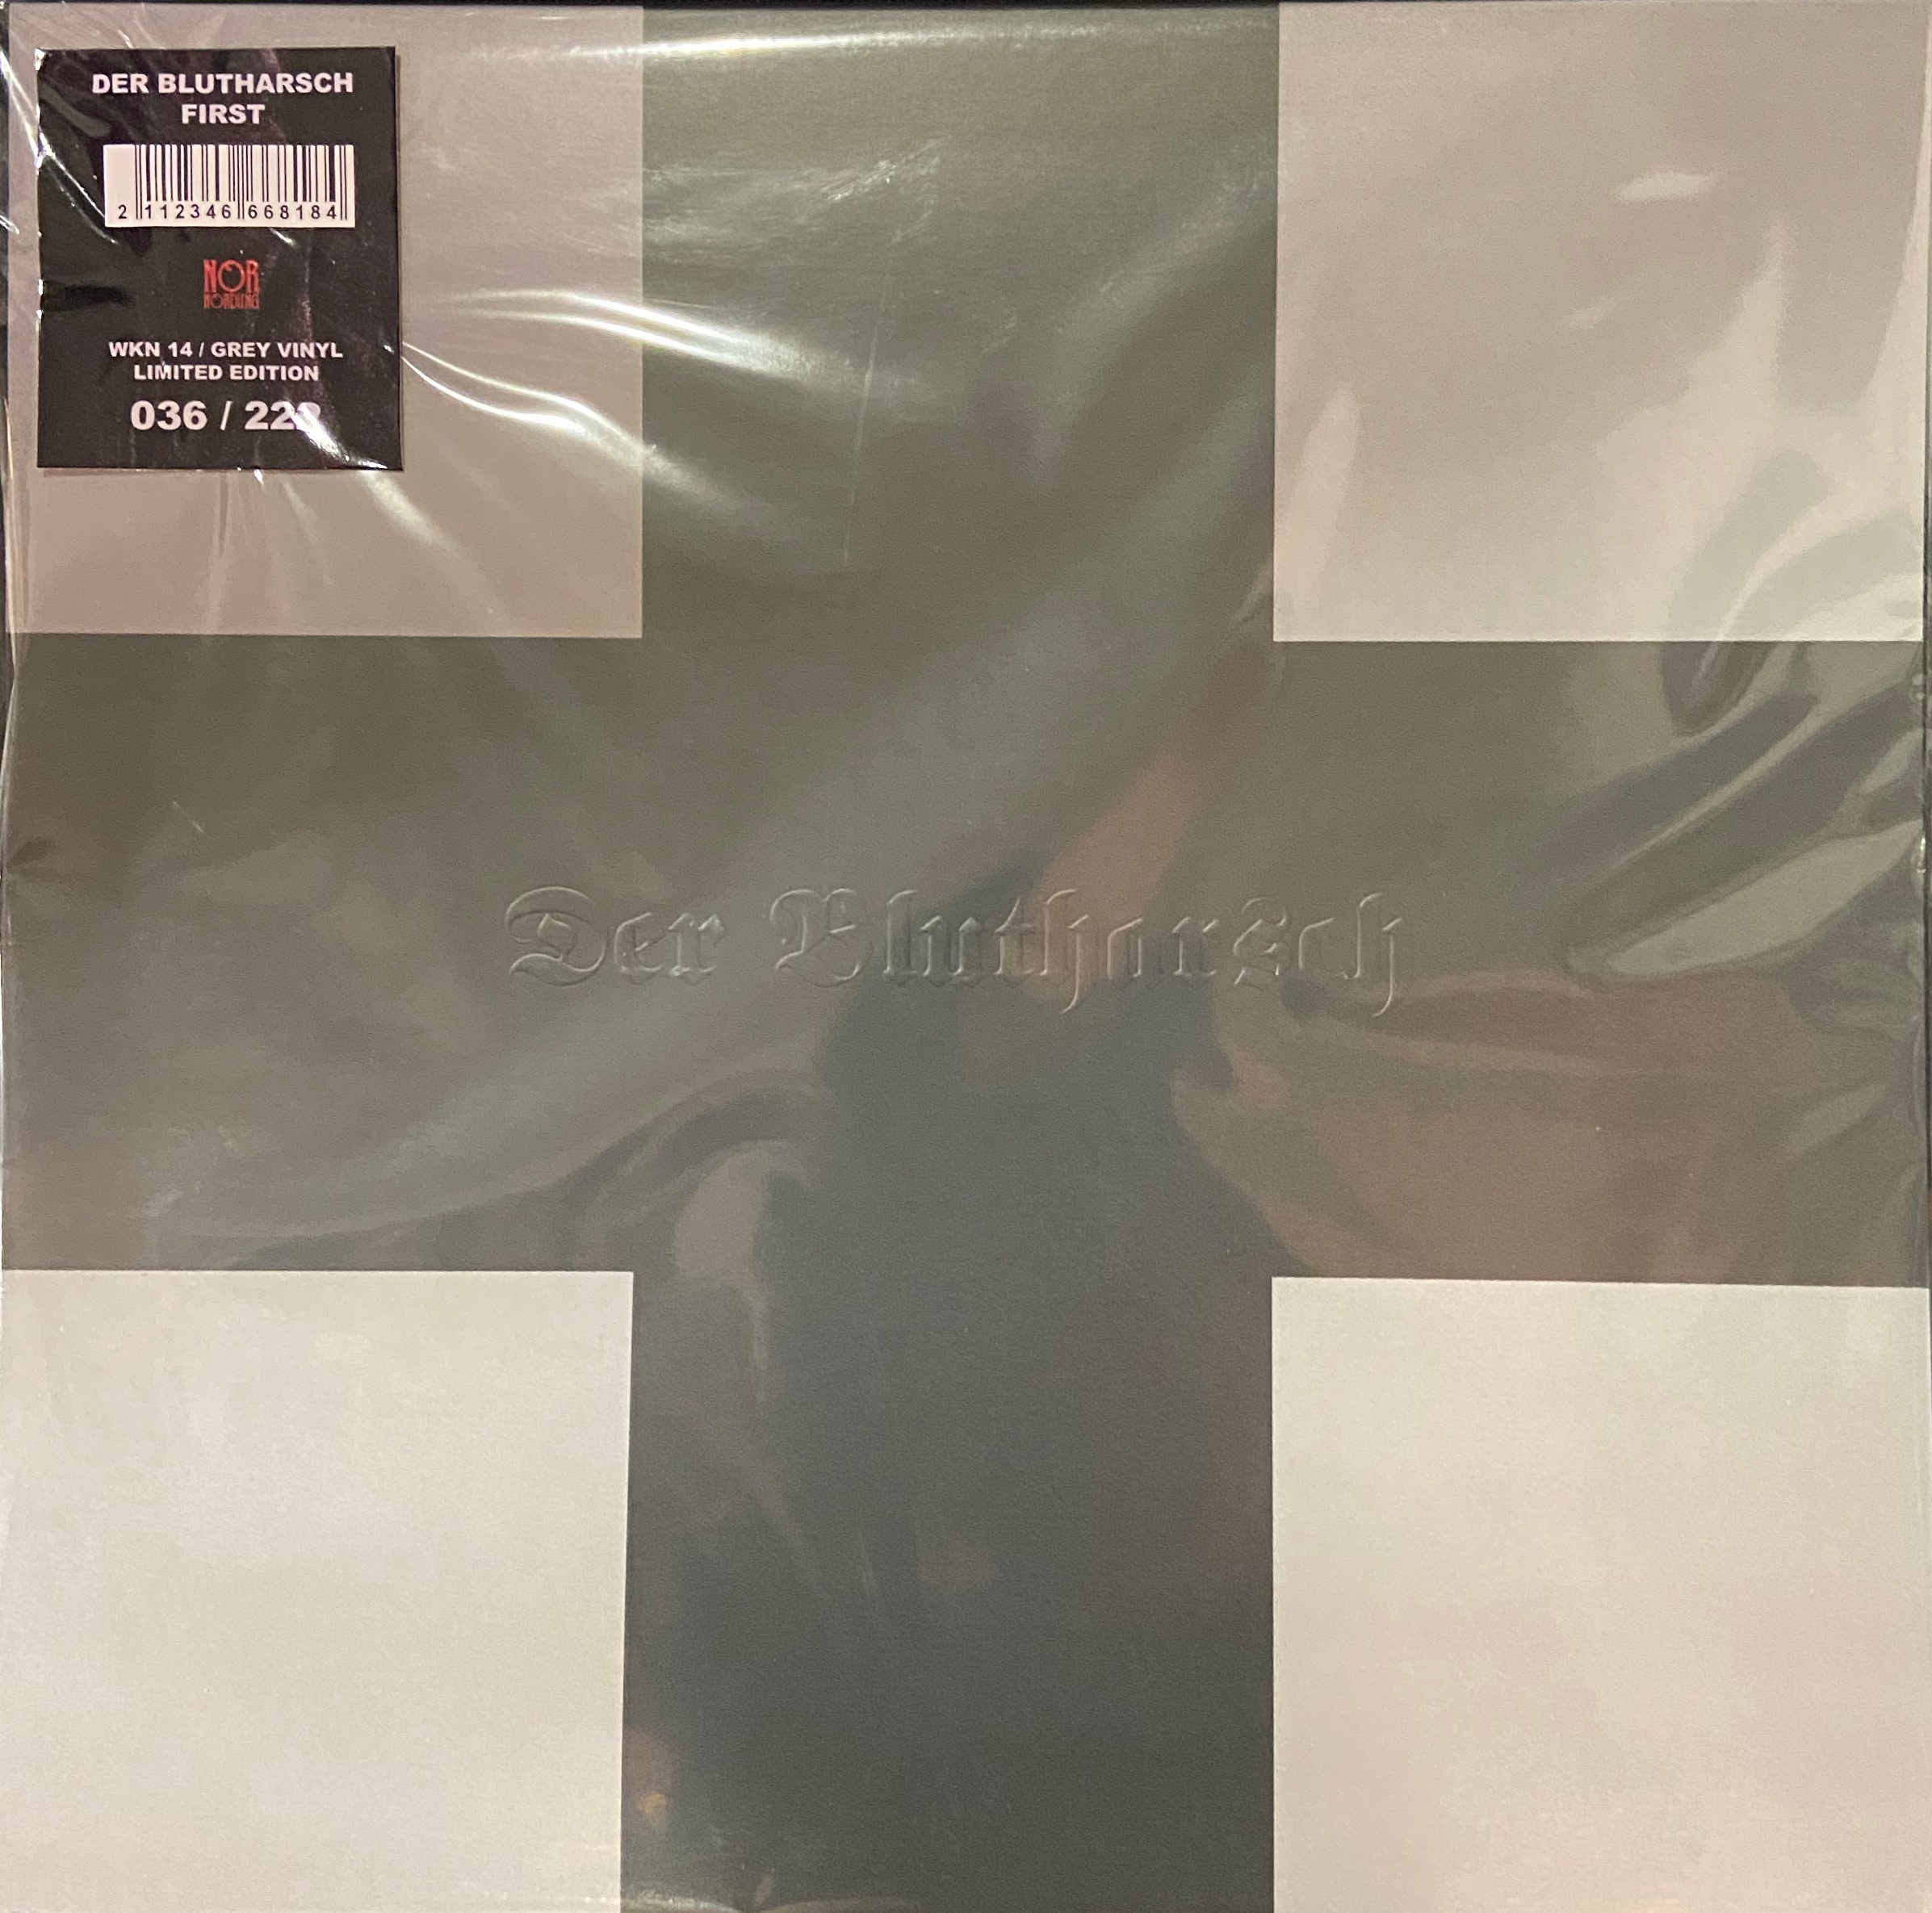 DER BLUTHARSCH : First (grey vinyl limited edition)